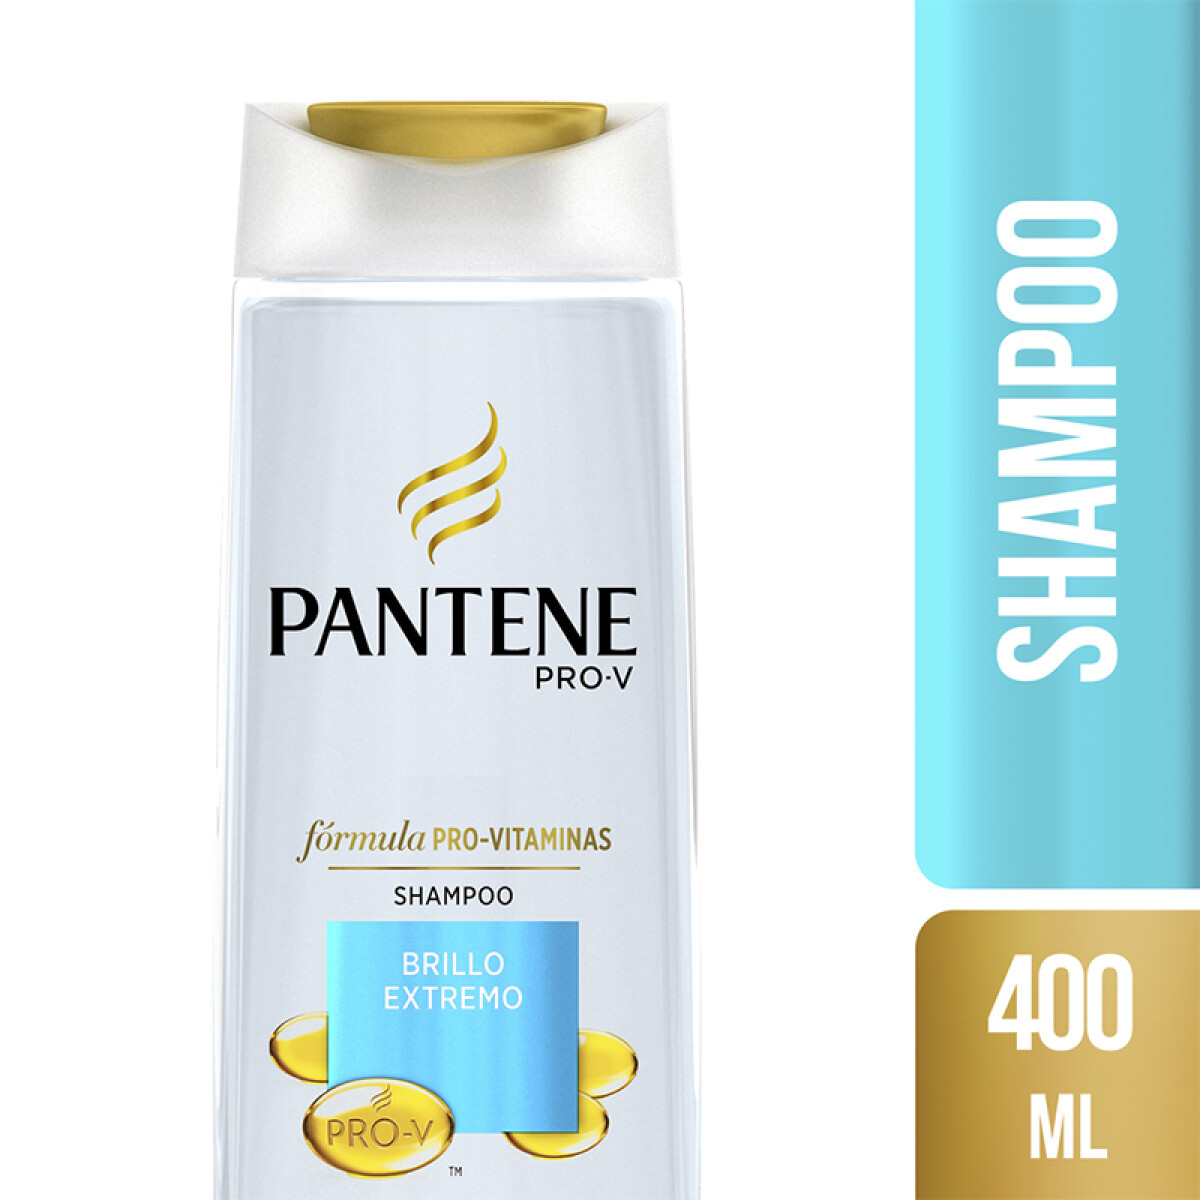 Pantene shampoo Brillo extremo - 400 ml 